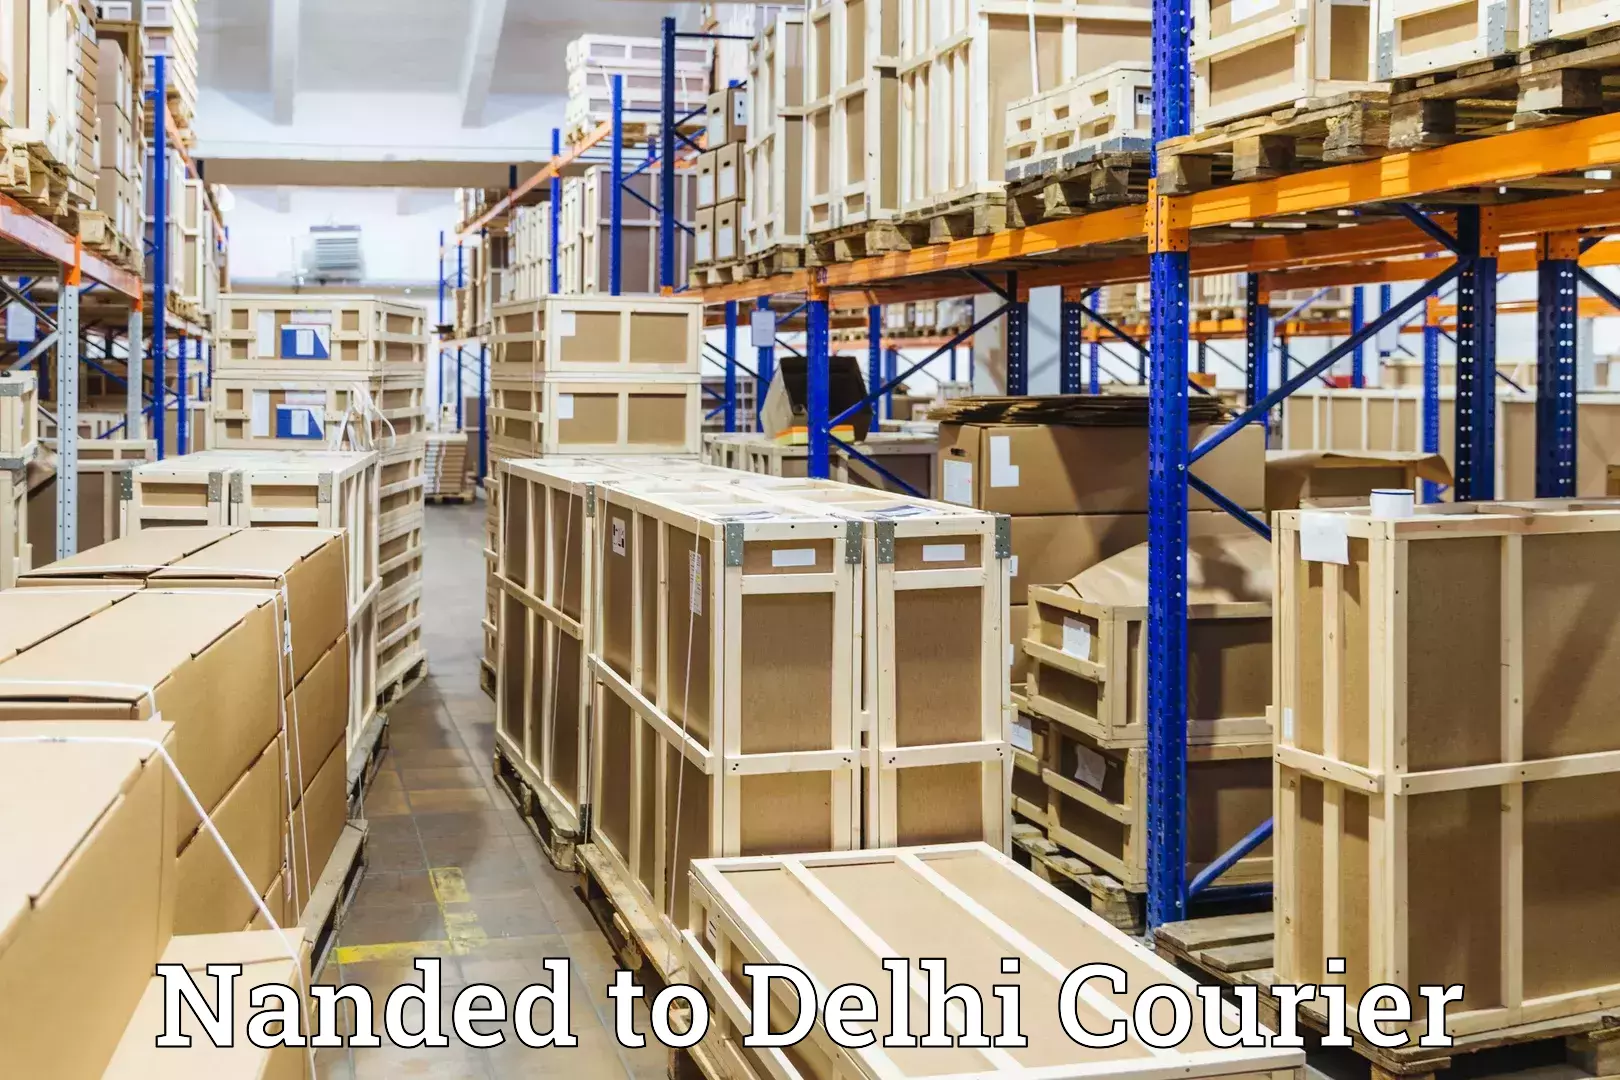 Baggage transport scheduler Nanded to Delhi